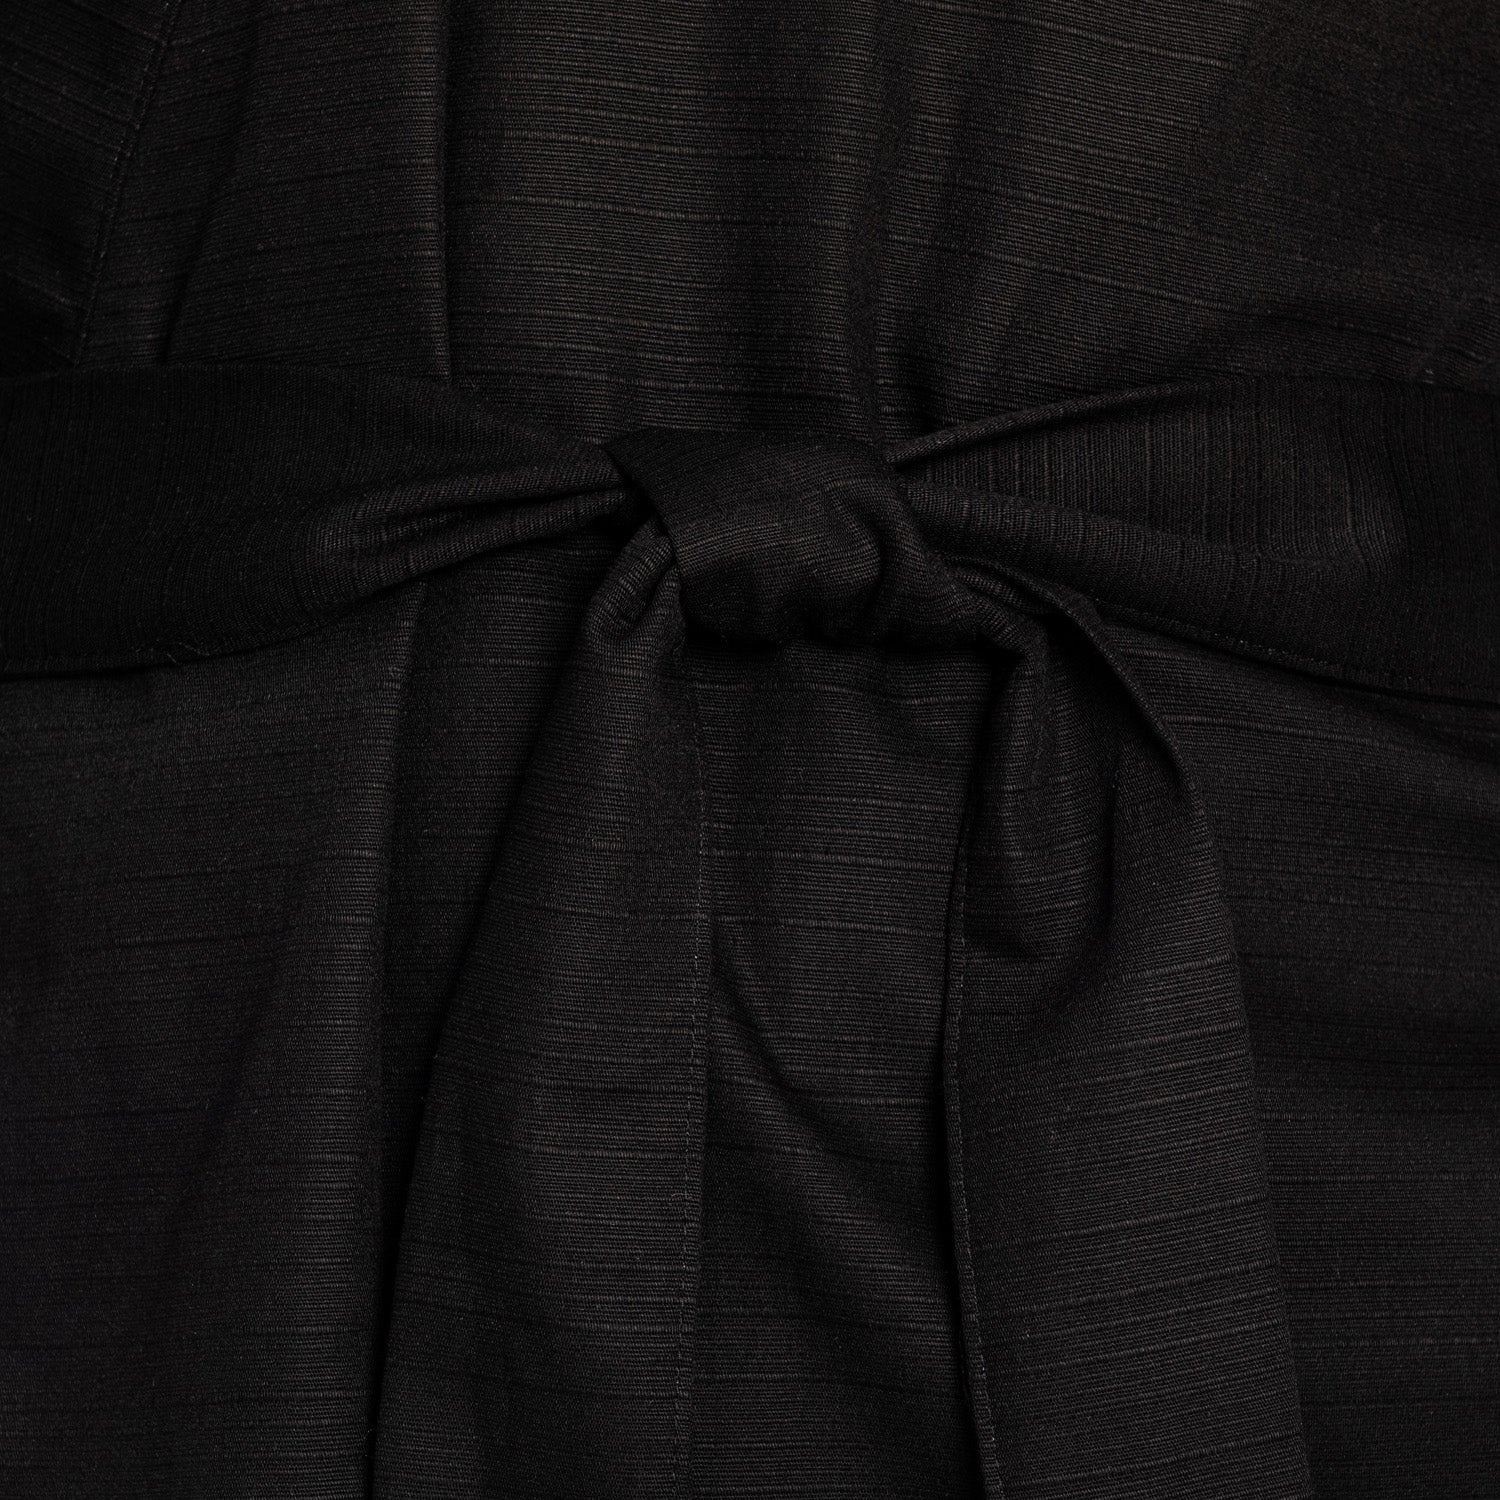 Japanese Kimono Zen Long Black